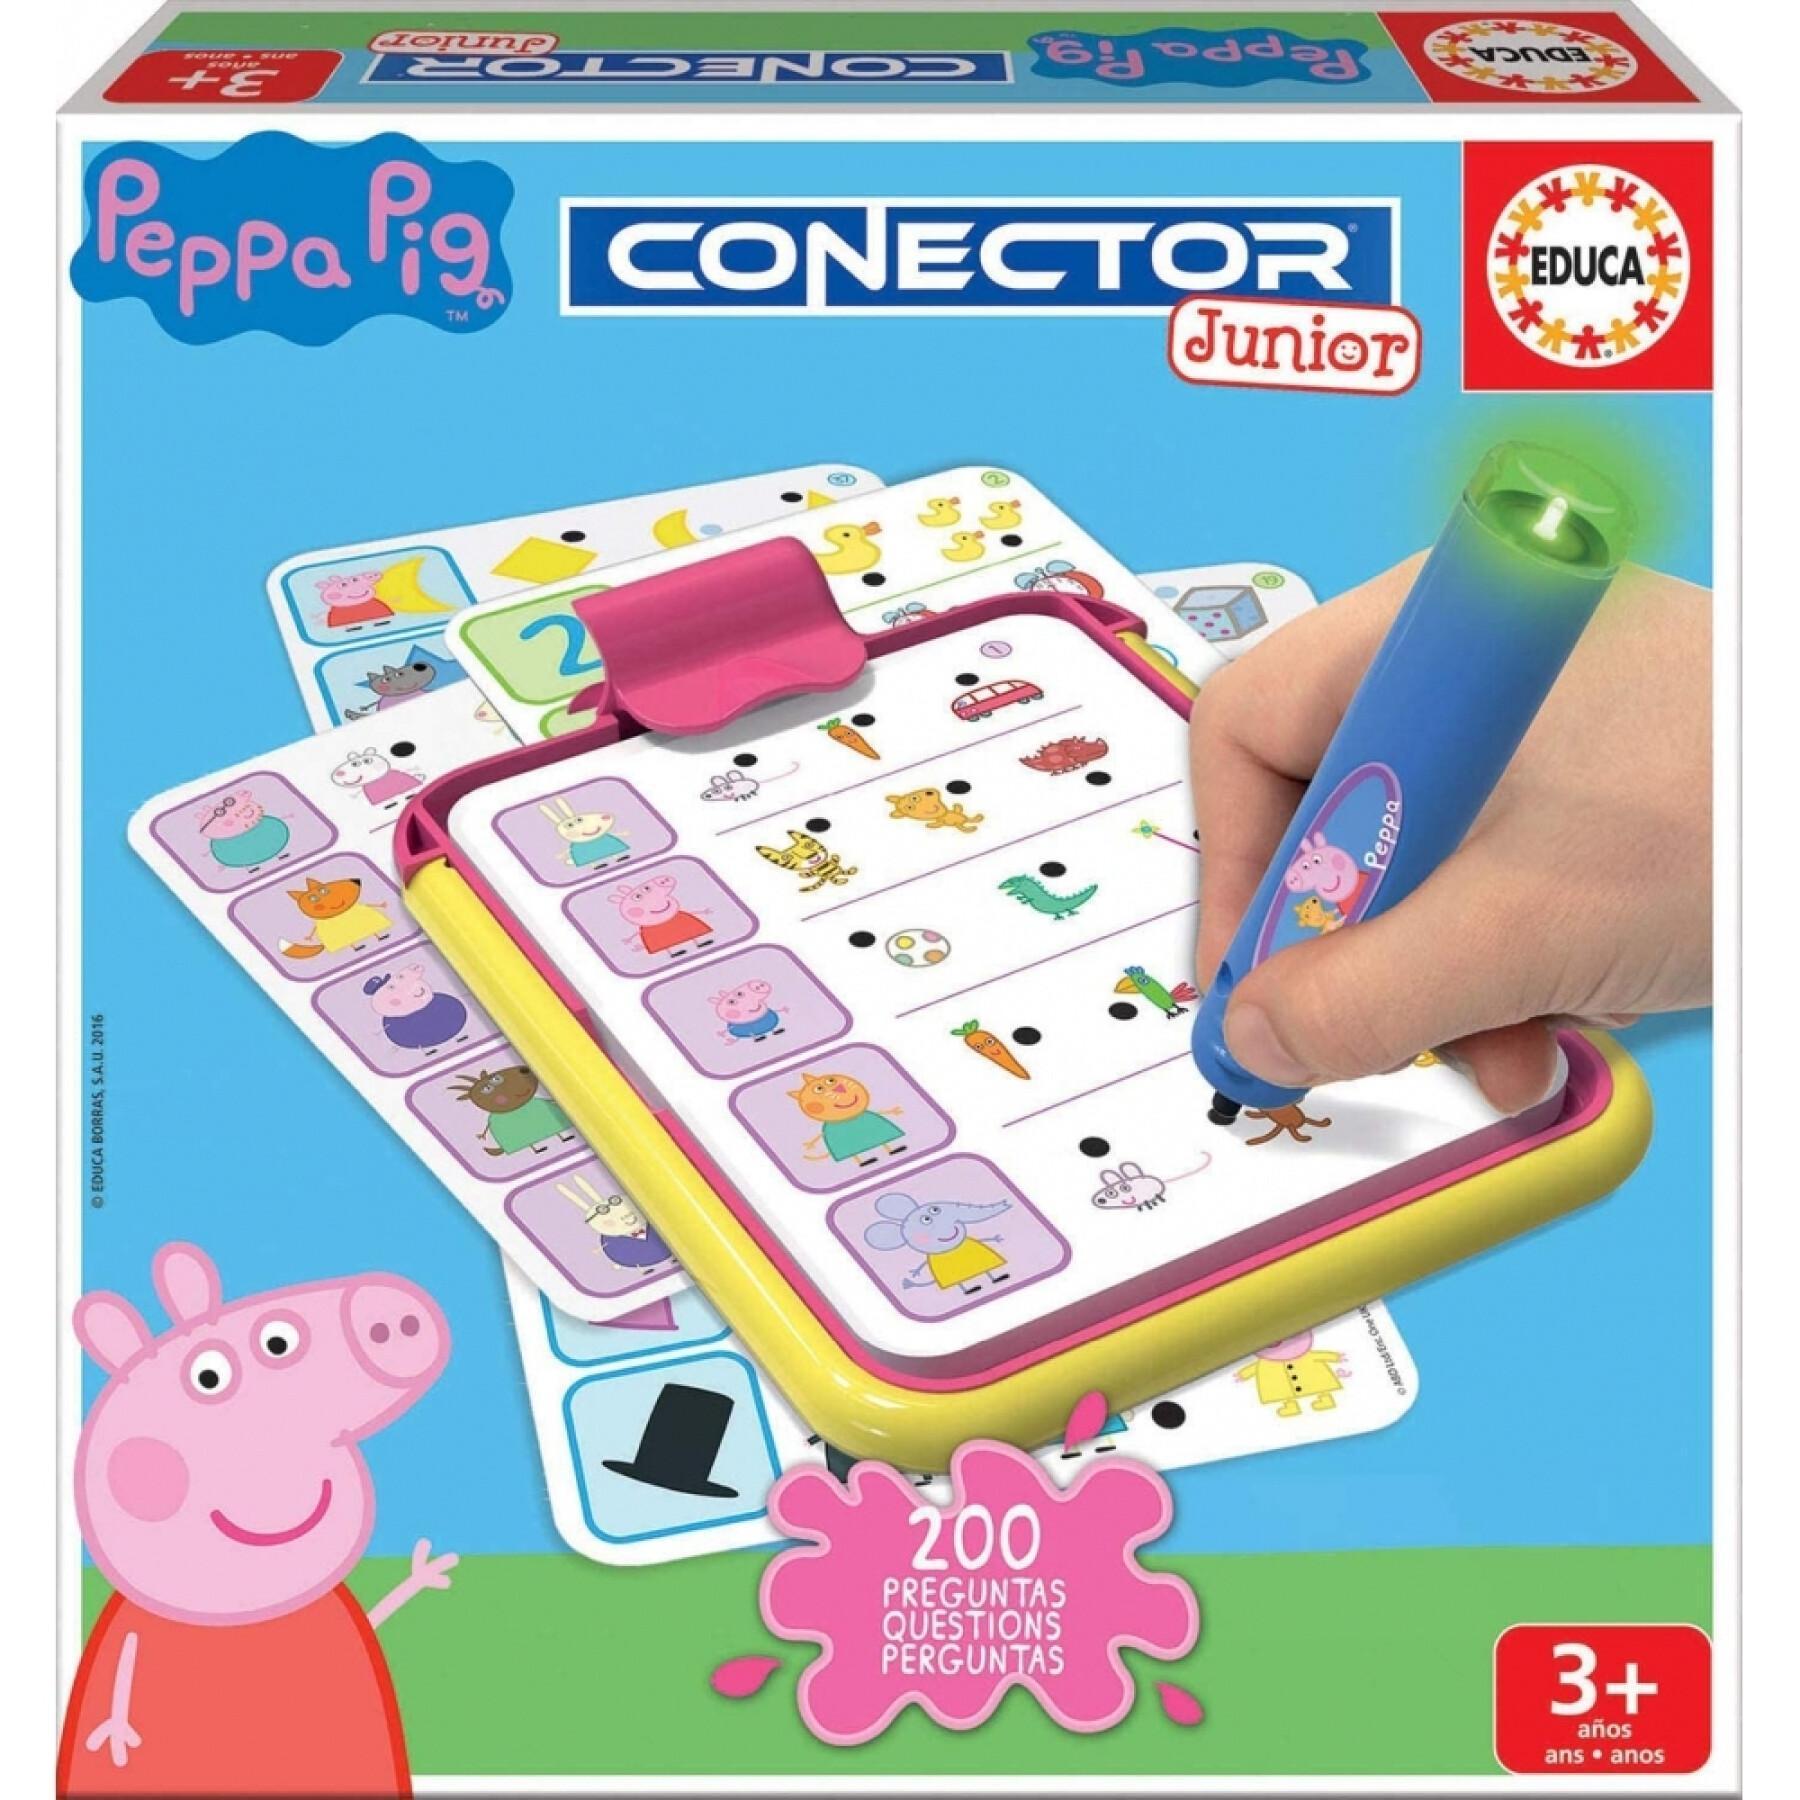 Gry edukacyjne typu pytanie i odpowiedź Peppa Pig Connector